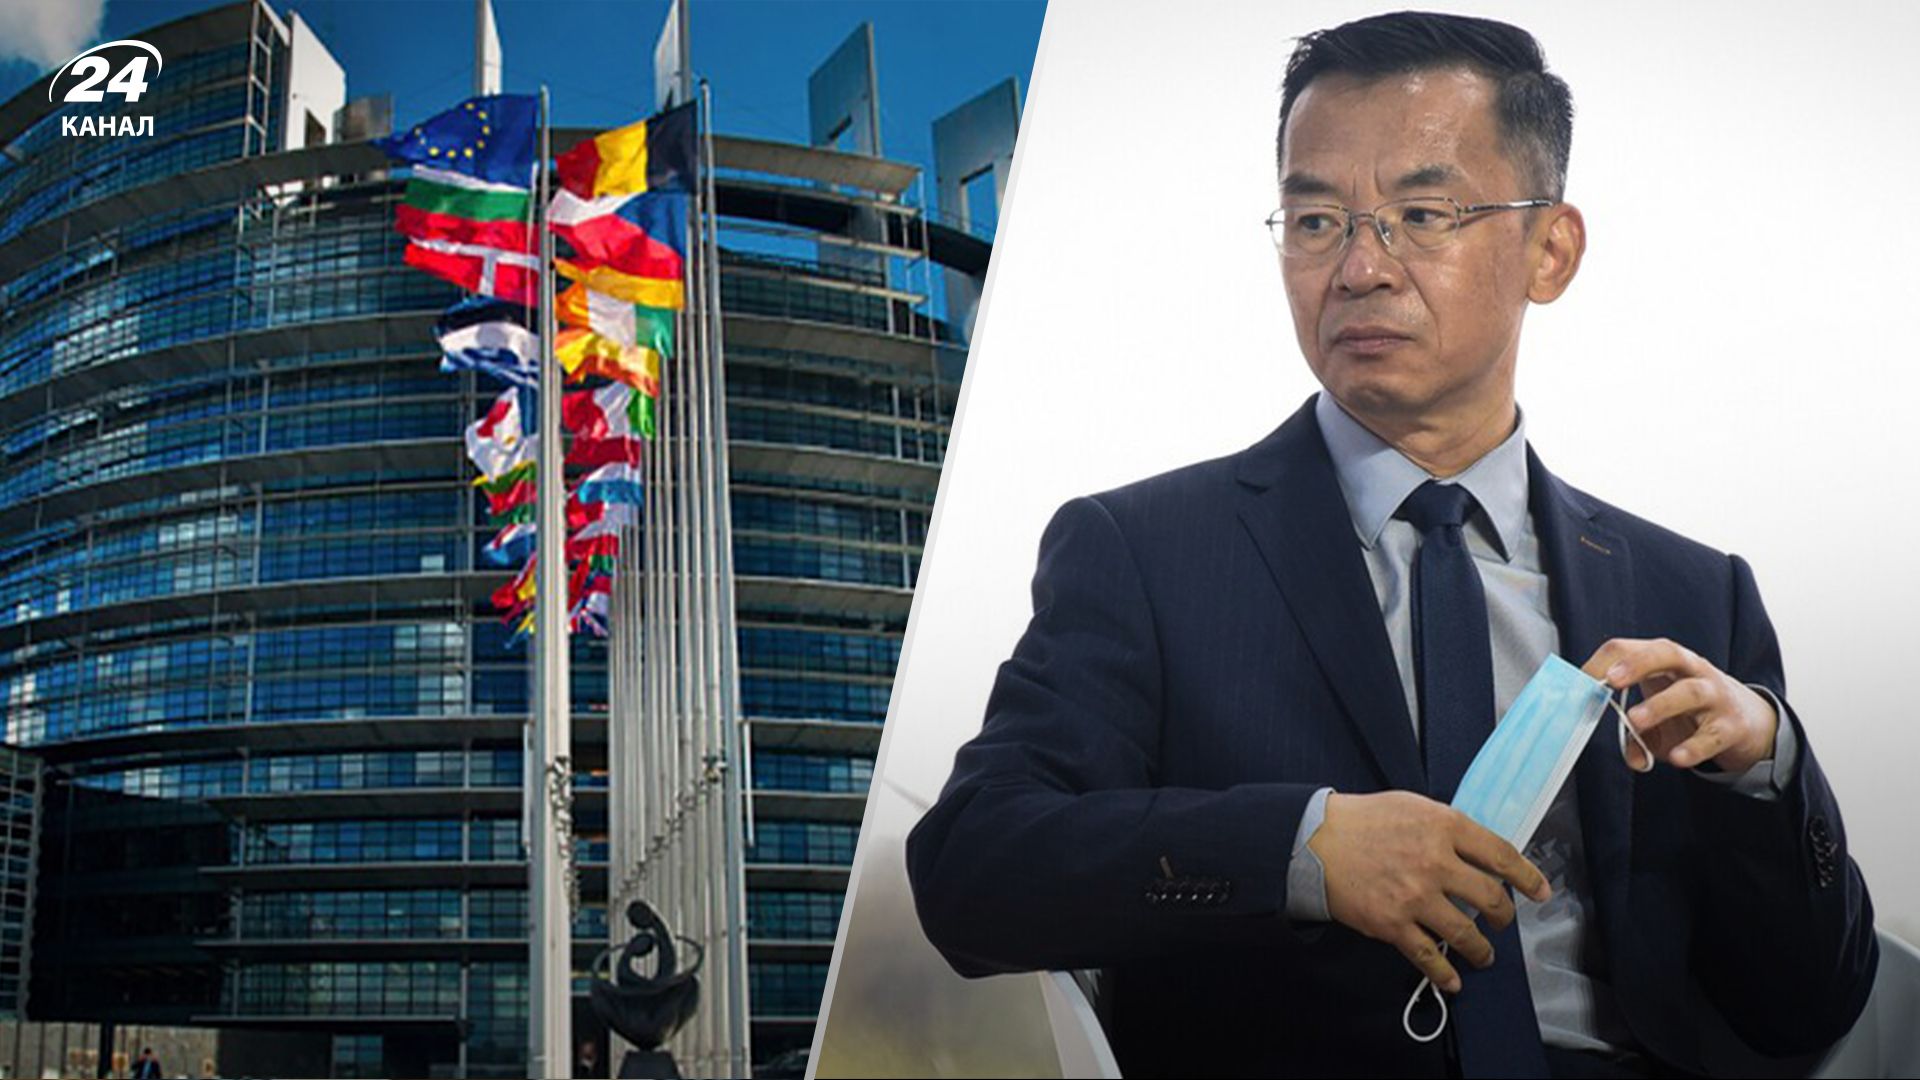 Европарламент призывает Францию признать посла Китая персоной нон грата - 24 Канал